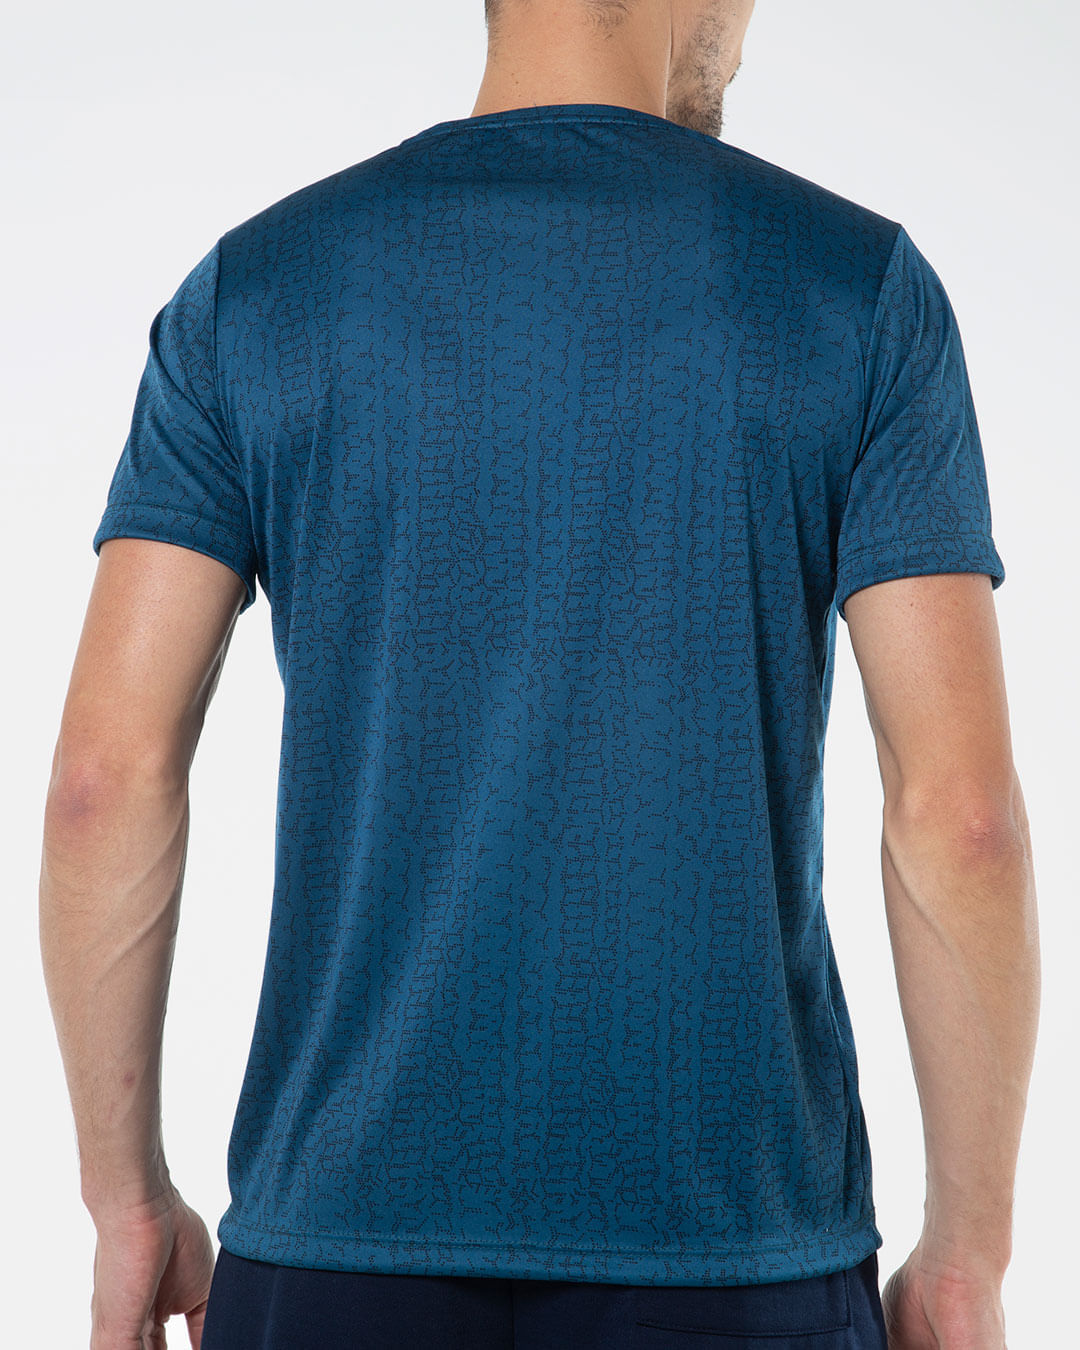 Camiseta-Masculina-Estampada-Linhas-Azul